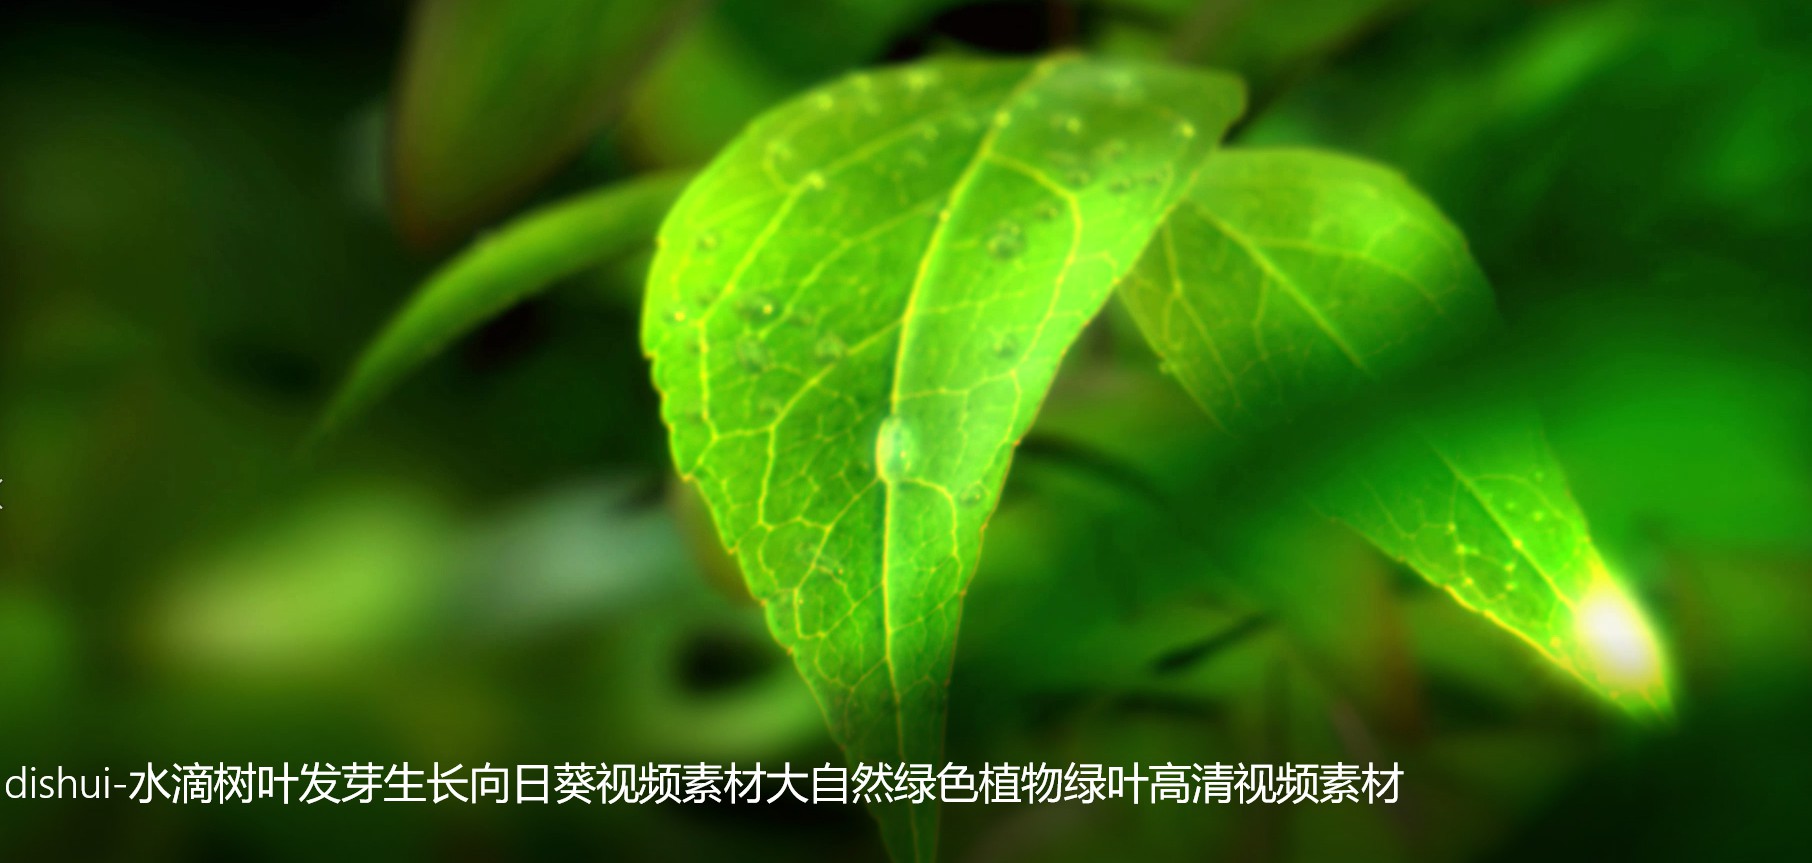 dishui-水滴树叶发芽生长向日葵视频素材大自然绿色植物绿叶高清视频素材